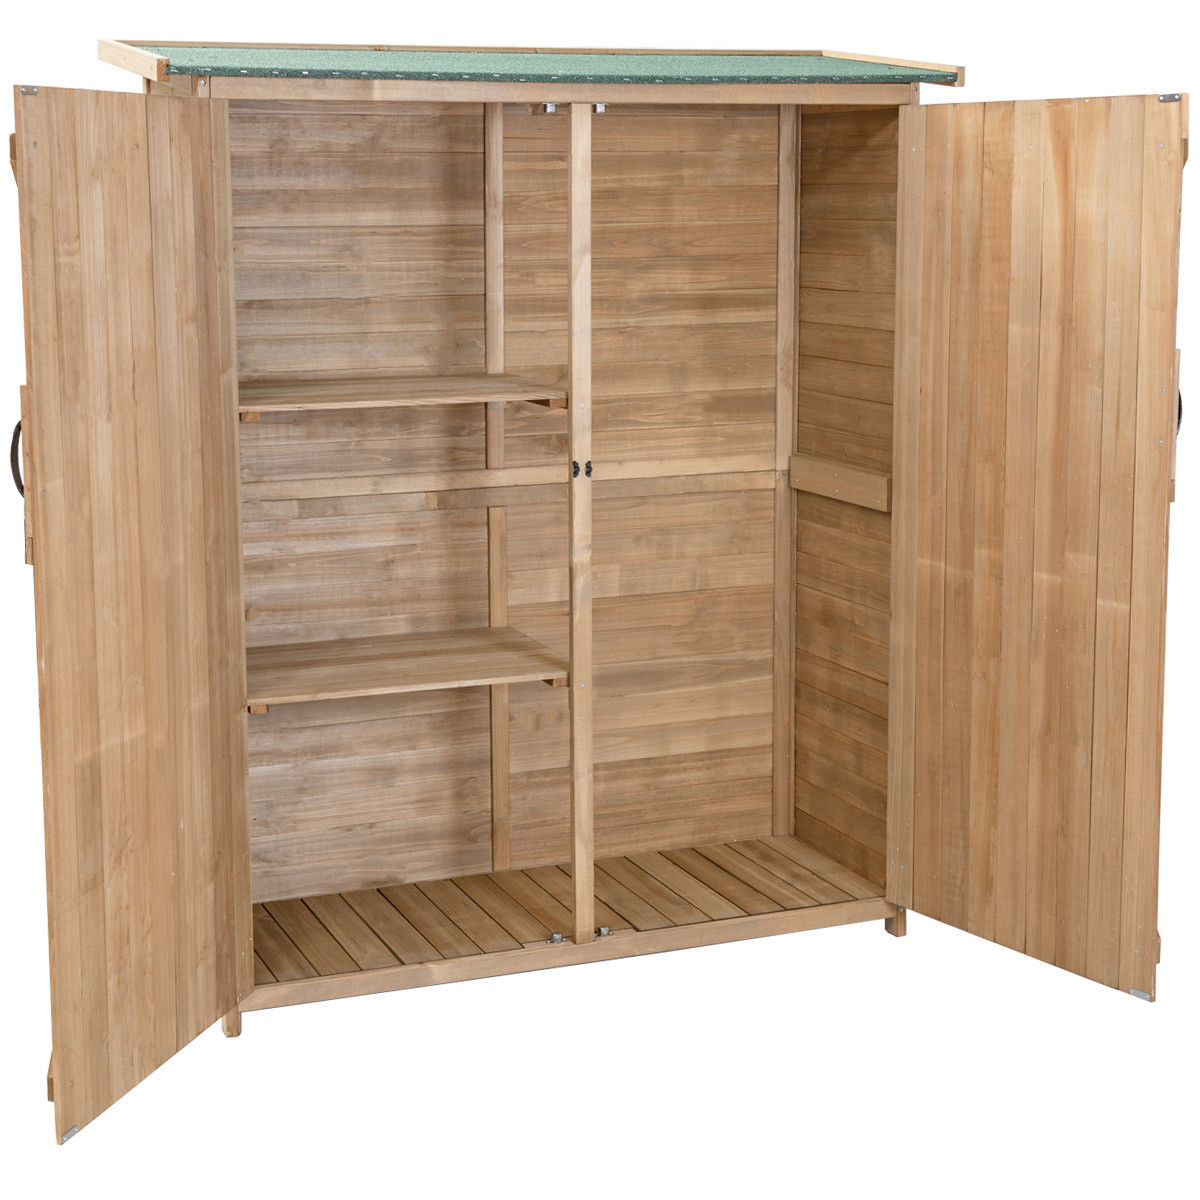 Costway Garden Outdoor Wooden Storage Shed Cabinet Double Doors Fir Wood Lockers